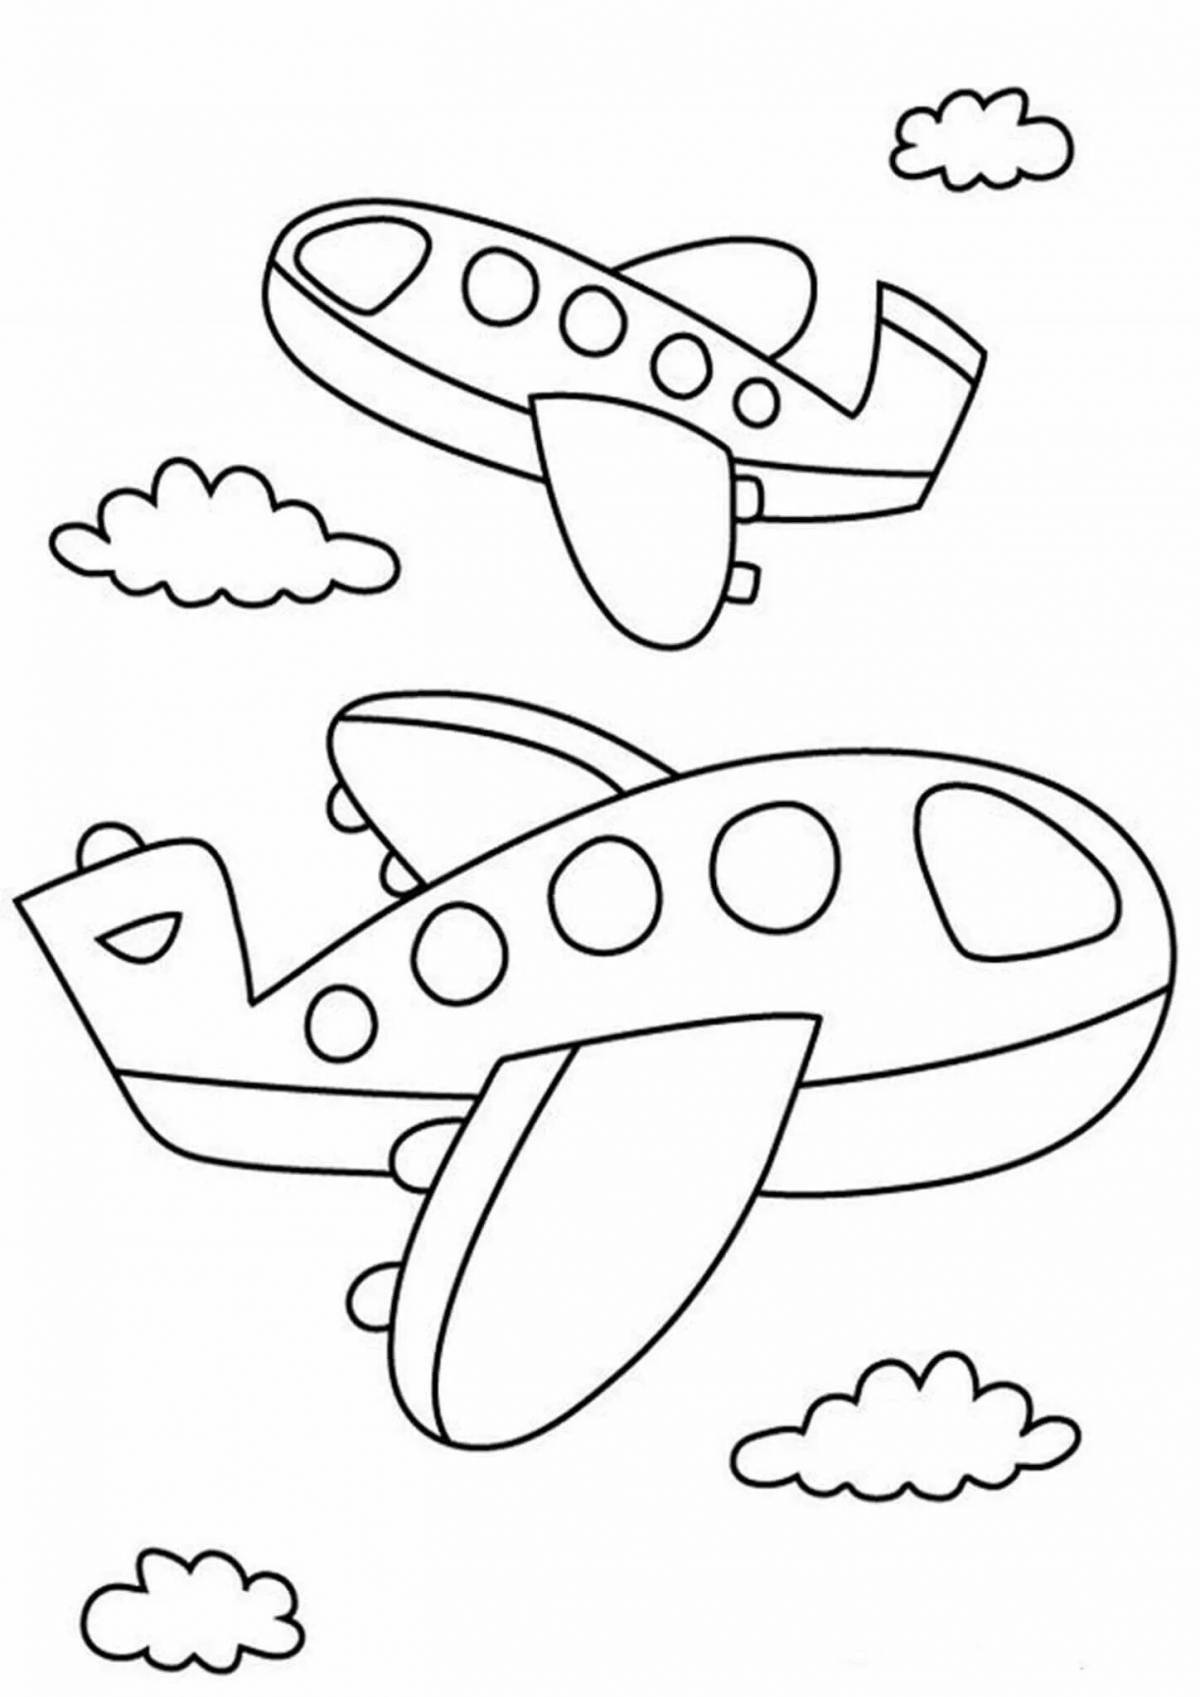 Раскраски 23 февраля 4 года. Самолет раскраска для малышей. Самолетик раскраска для малышей. Раскраска 23 февраля для малышей. Раскраски для детей 23 феврал.